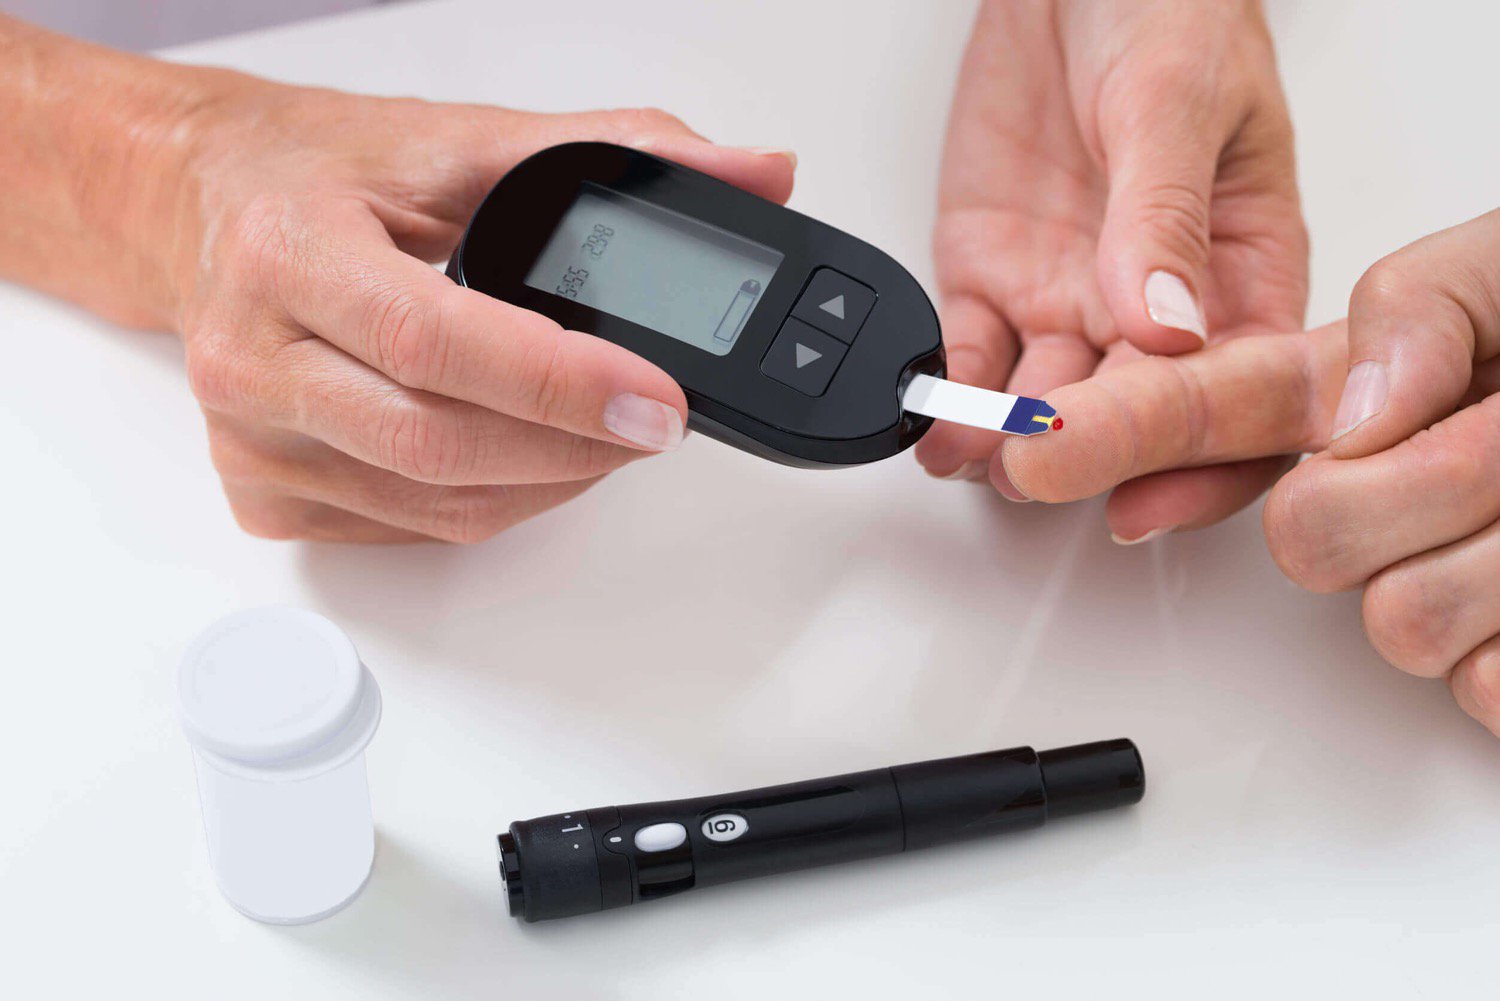 En ny start kommer att hjälpa patienter med diabetes utan droger